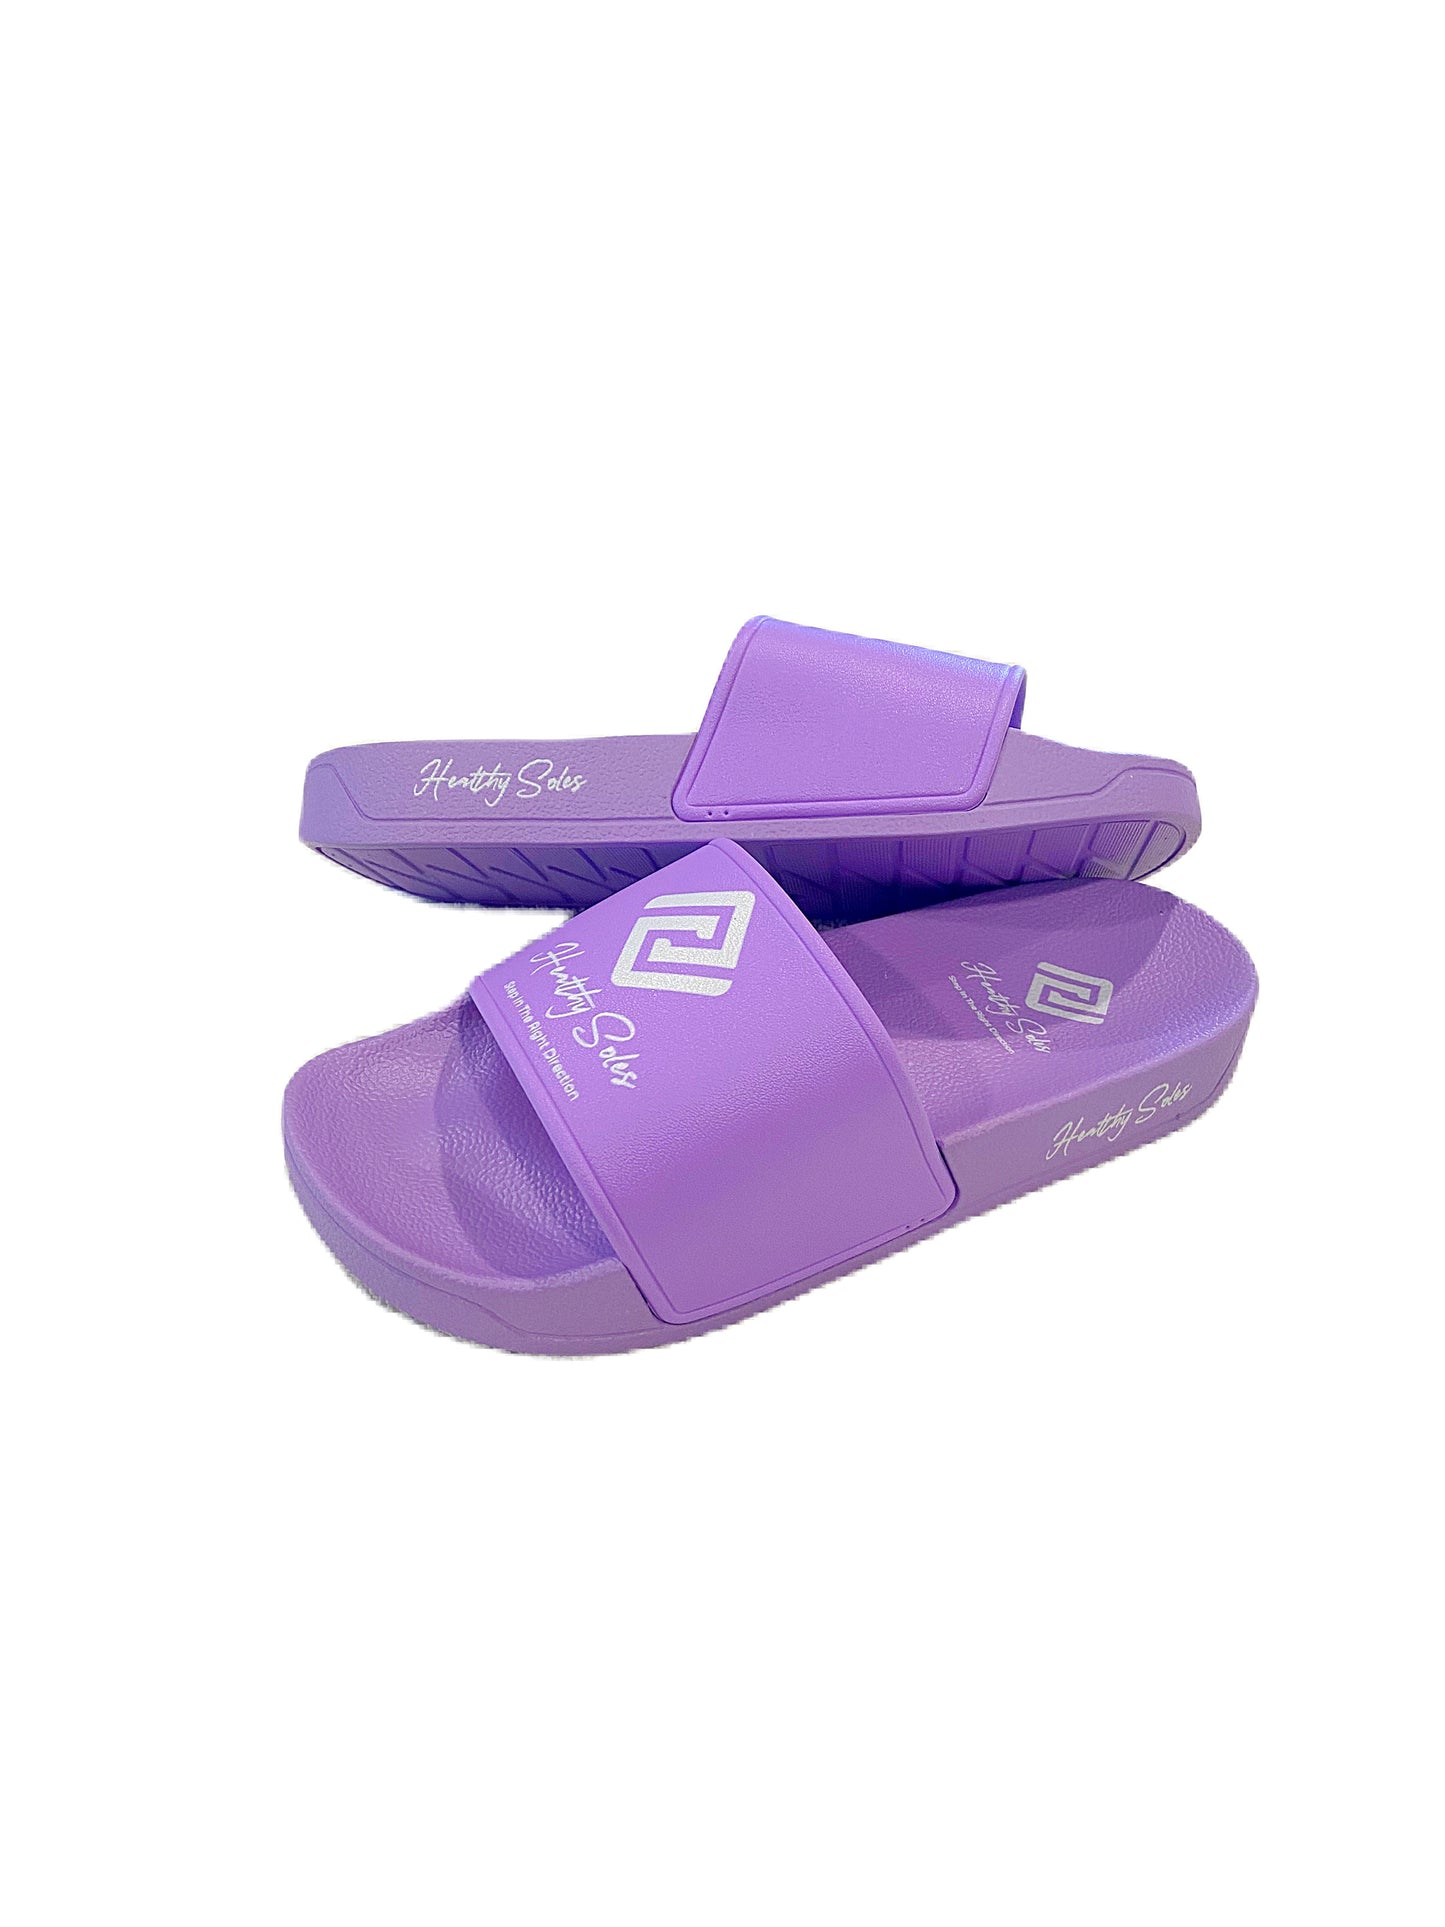 Lavender Royalty Slide - Kids